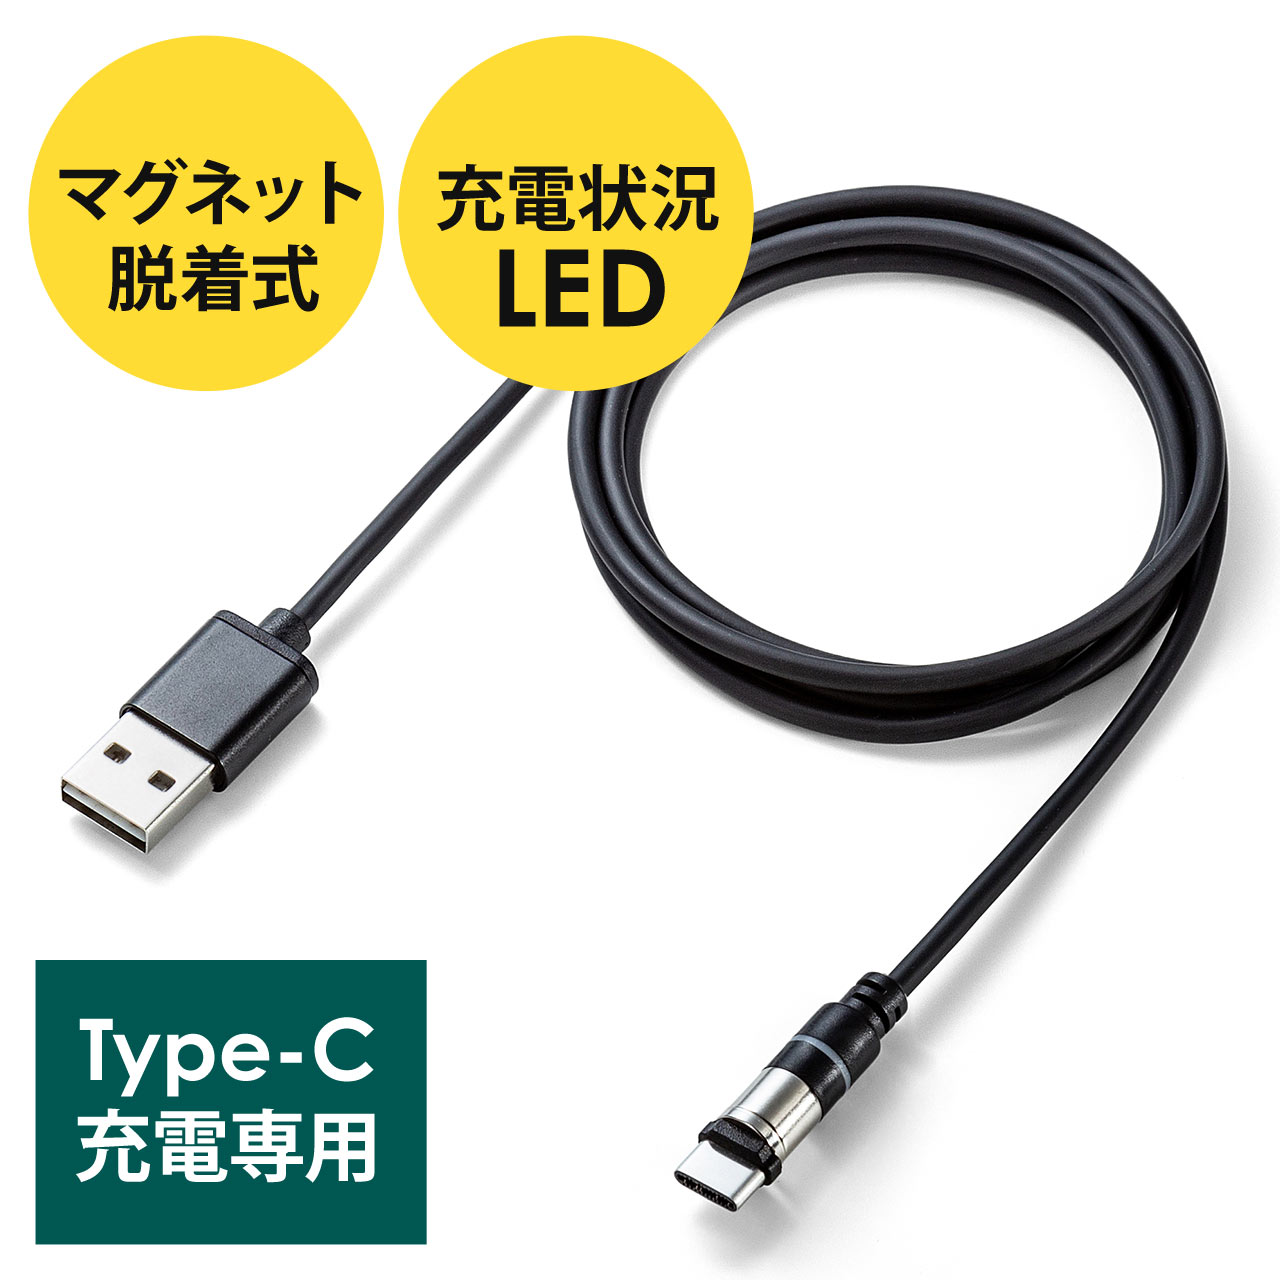 USB マグネット ケーブル iPhone   Type-C   Micro USB   3タイプのコネクタに対応 360度回転 50cm 磁気ケーブル